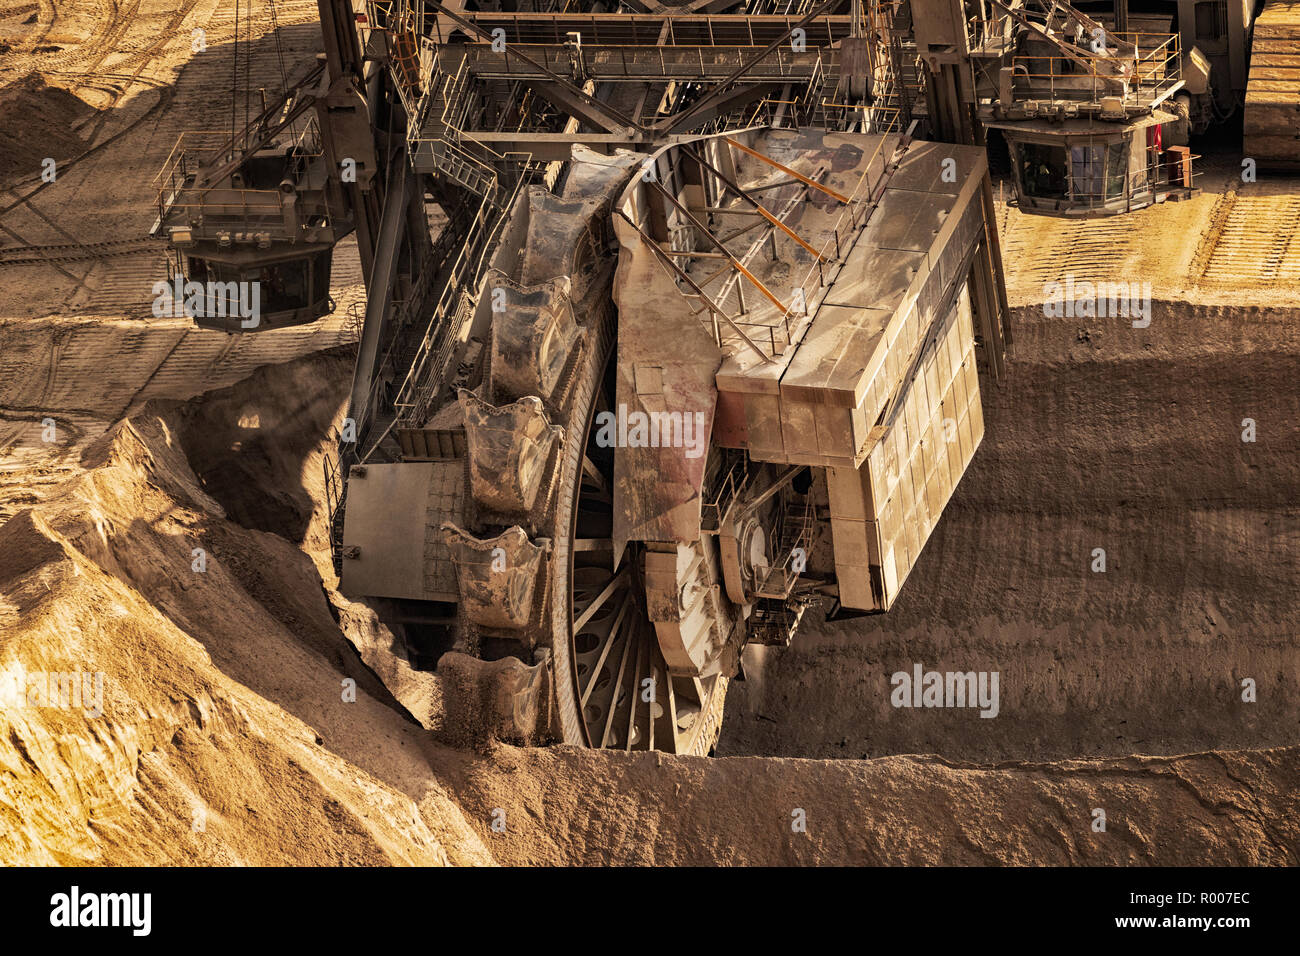 Enorme cuchara excavadora de ruedas para minería de carbón en una mina a cielo abierto. Foto de stock